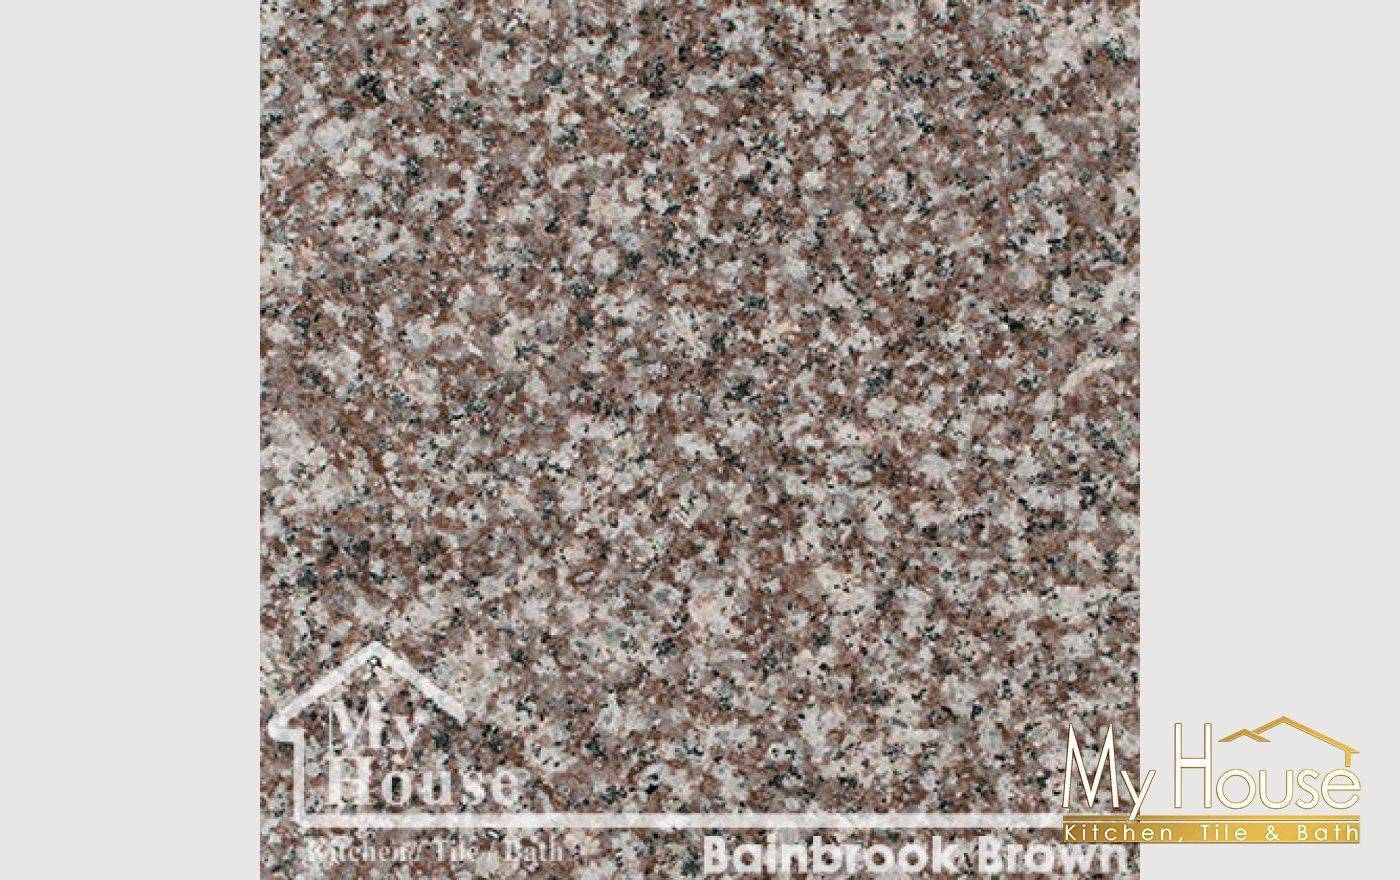 Bainbrook Brown Granite Countertops